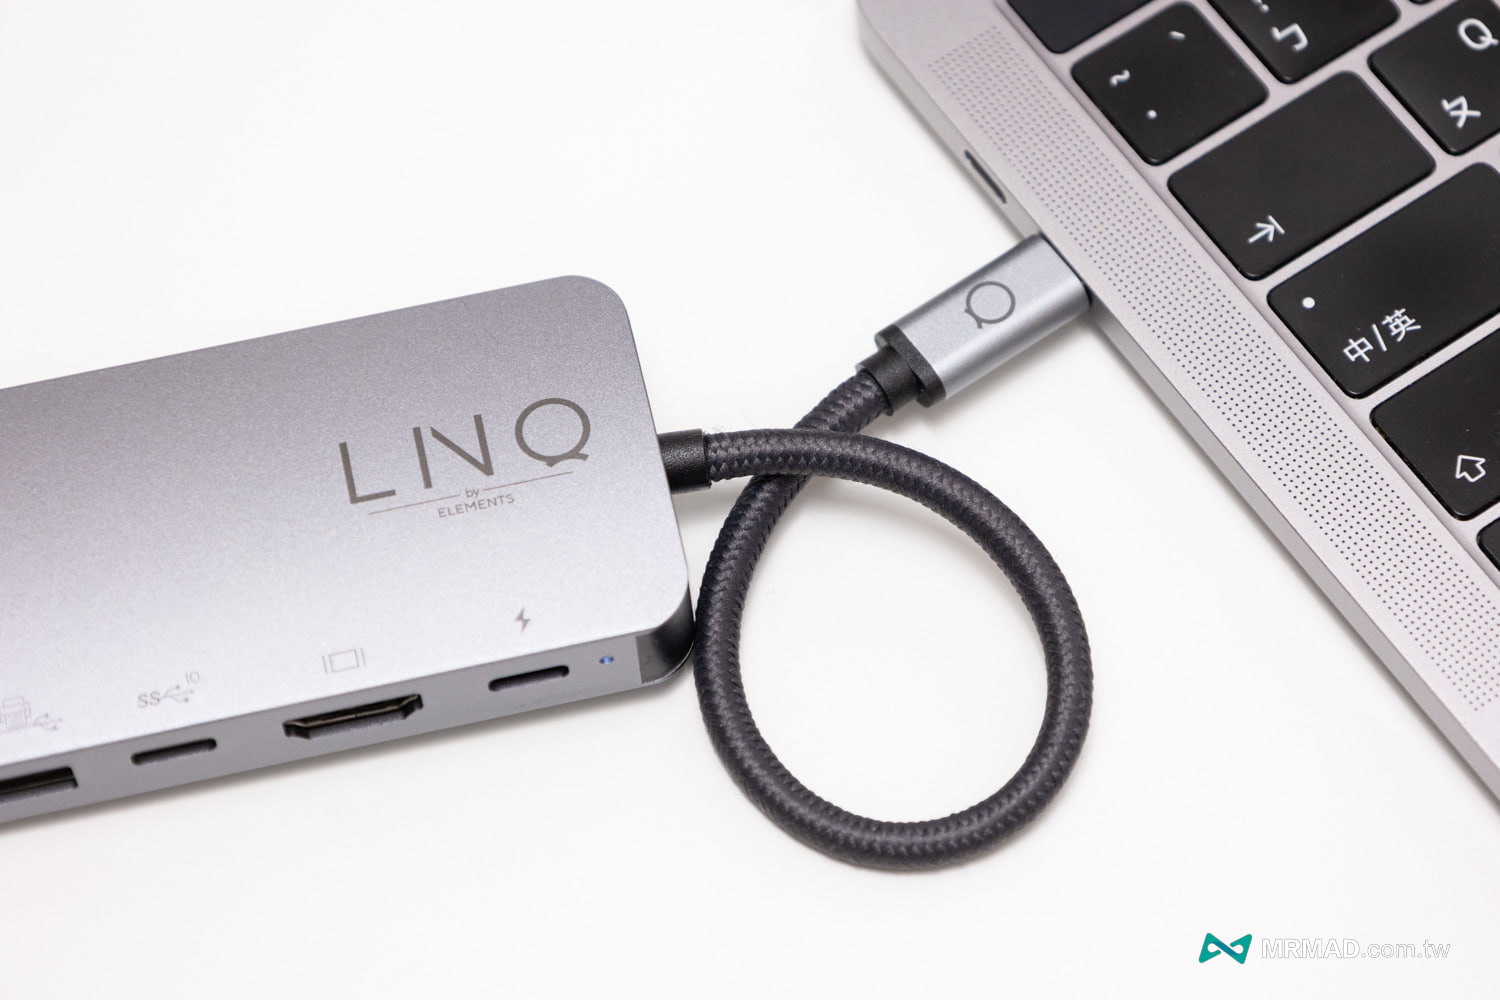 丹麥LINQ 9合1 SSD Pro Studio Hub 集線器開箱9